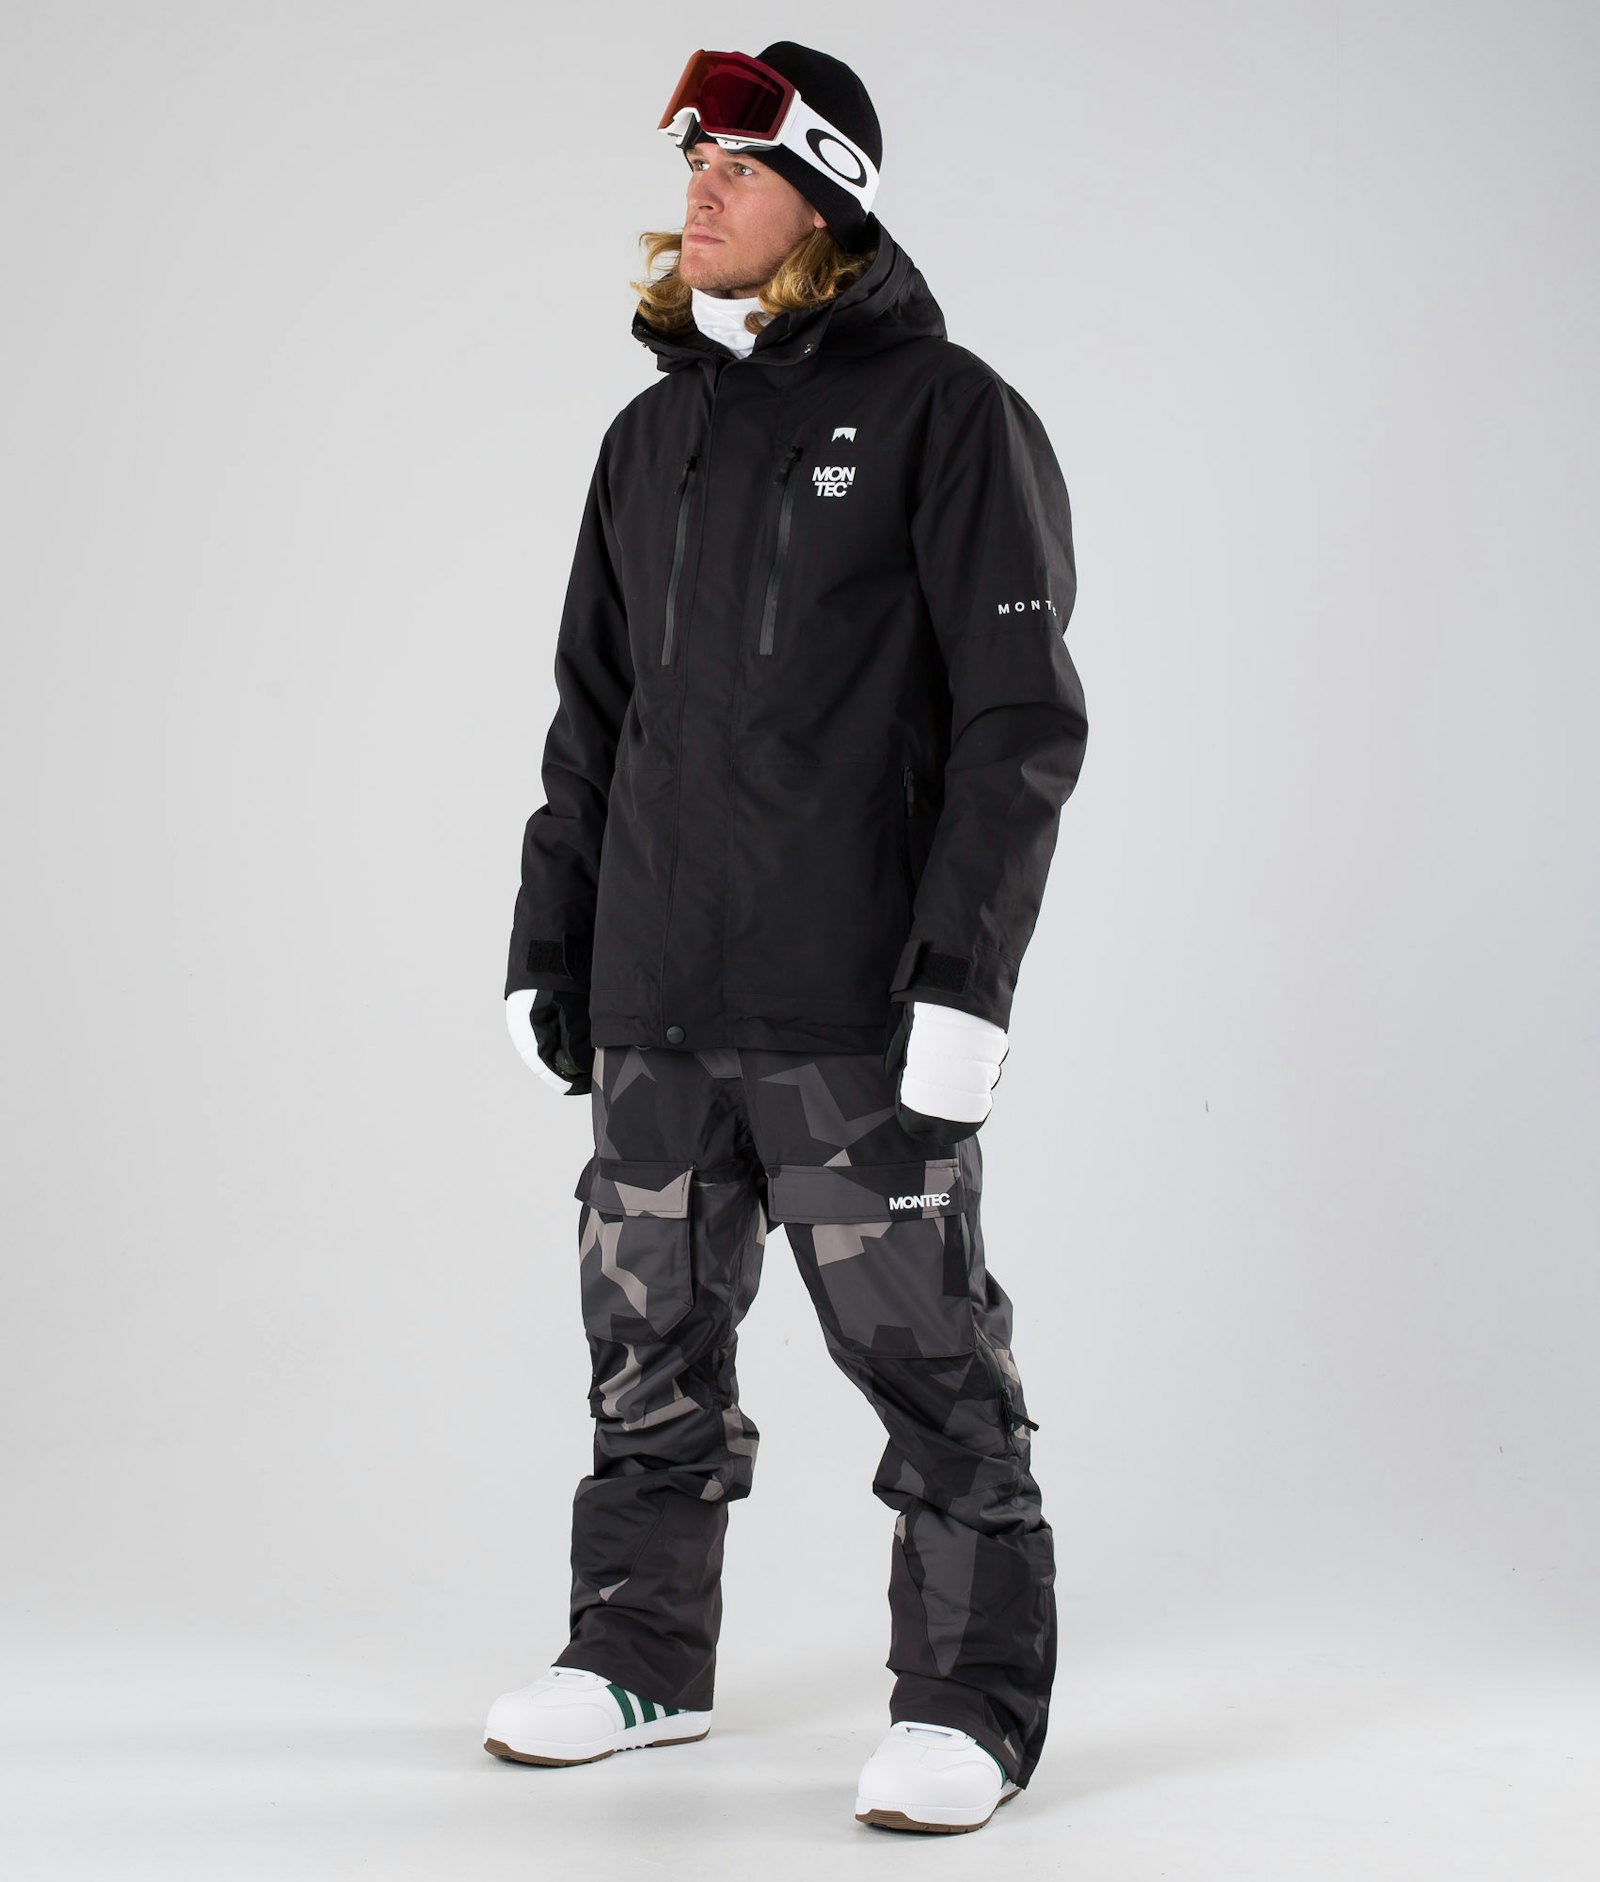 Fawk 2019 Veste Snowboard Homme Black